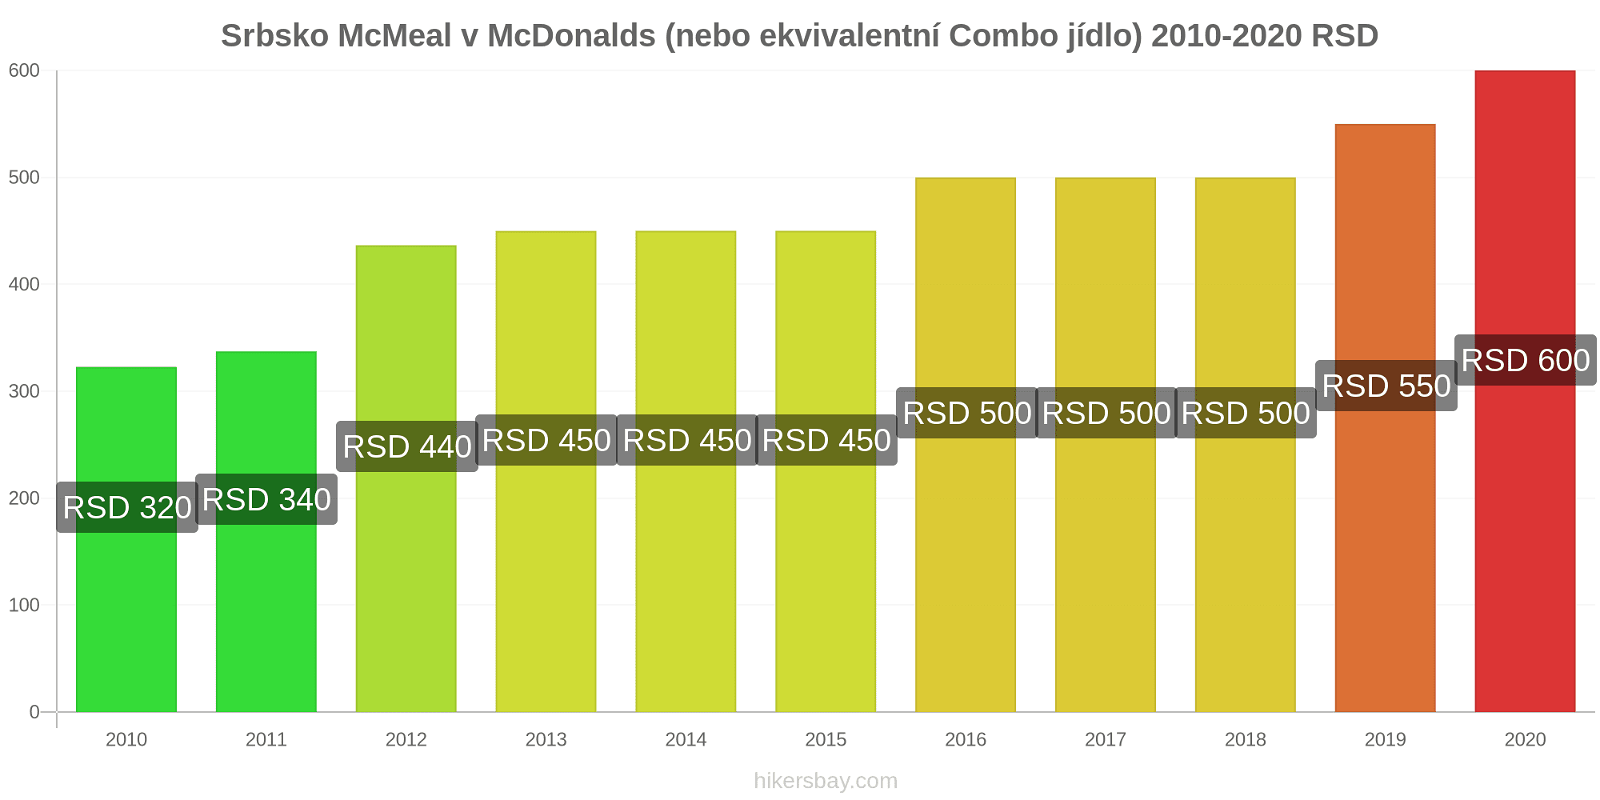 Srbsko změny cen McMeal v McDonalds (nebo ekvivalentní Combo jídlo) hikersbay.com